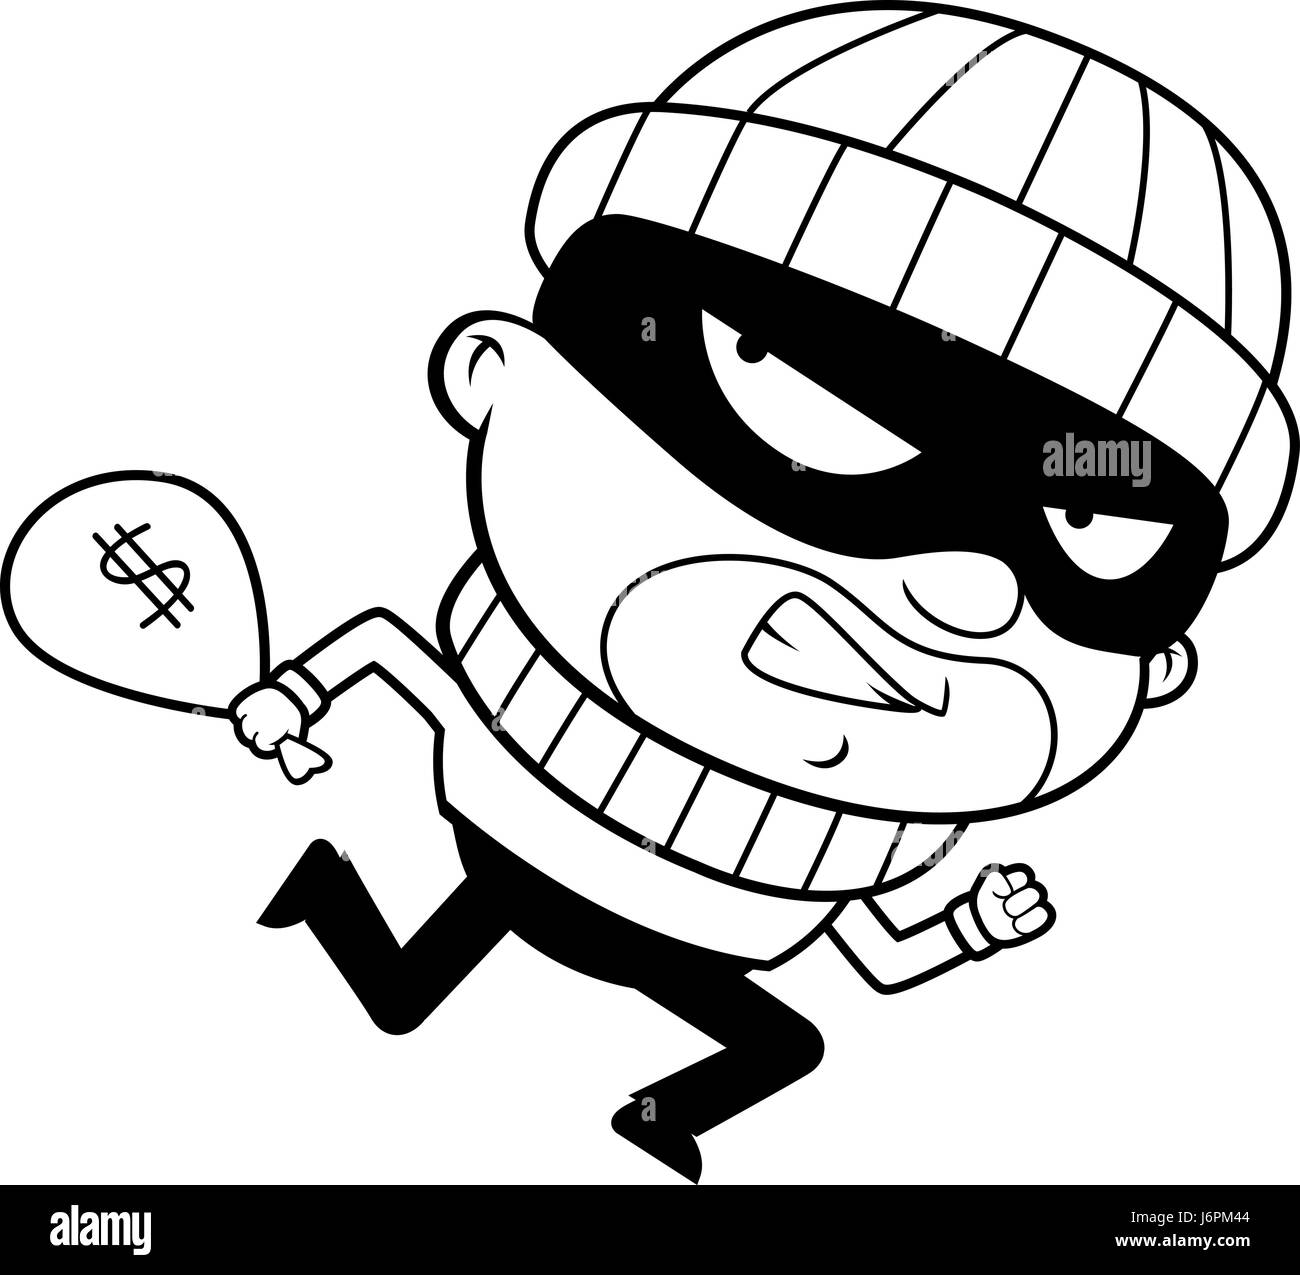 Un dessin de cambrioleur en fuite avec un sac d'argent volé Illustration de Vecteur